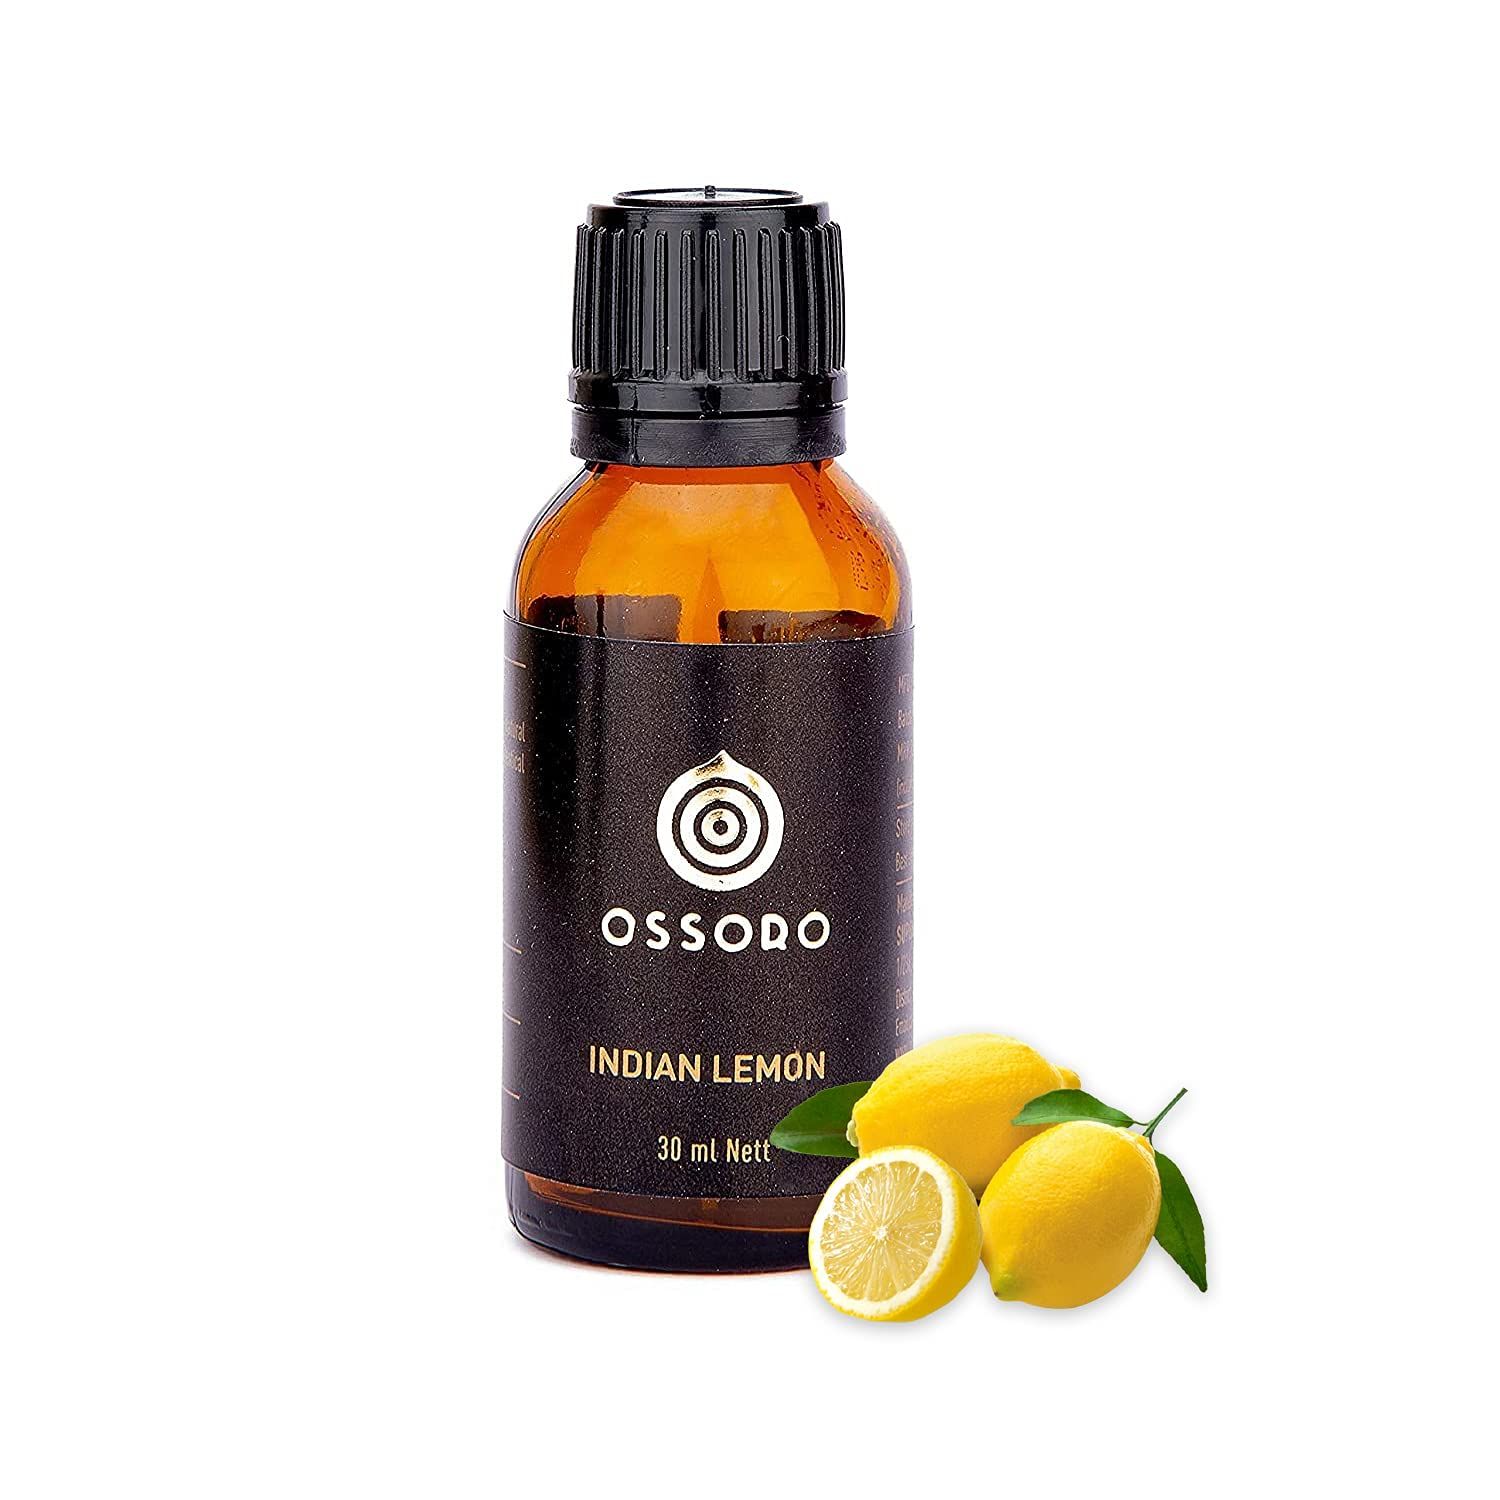 Ossoro Indian Lemon Image